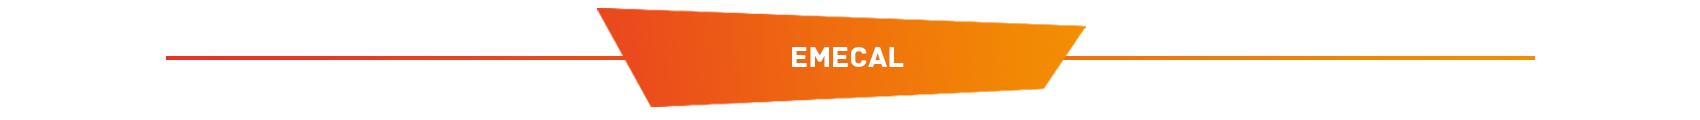 Emecal